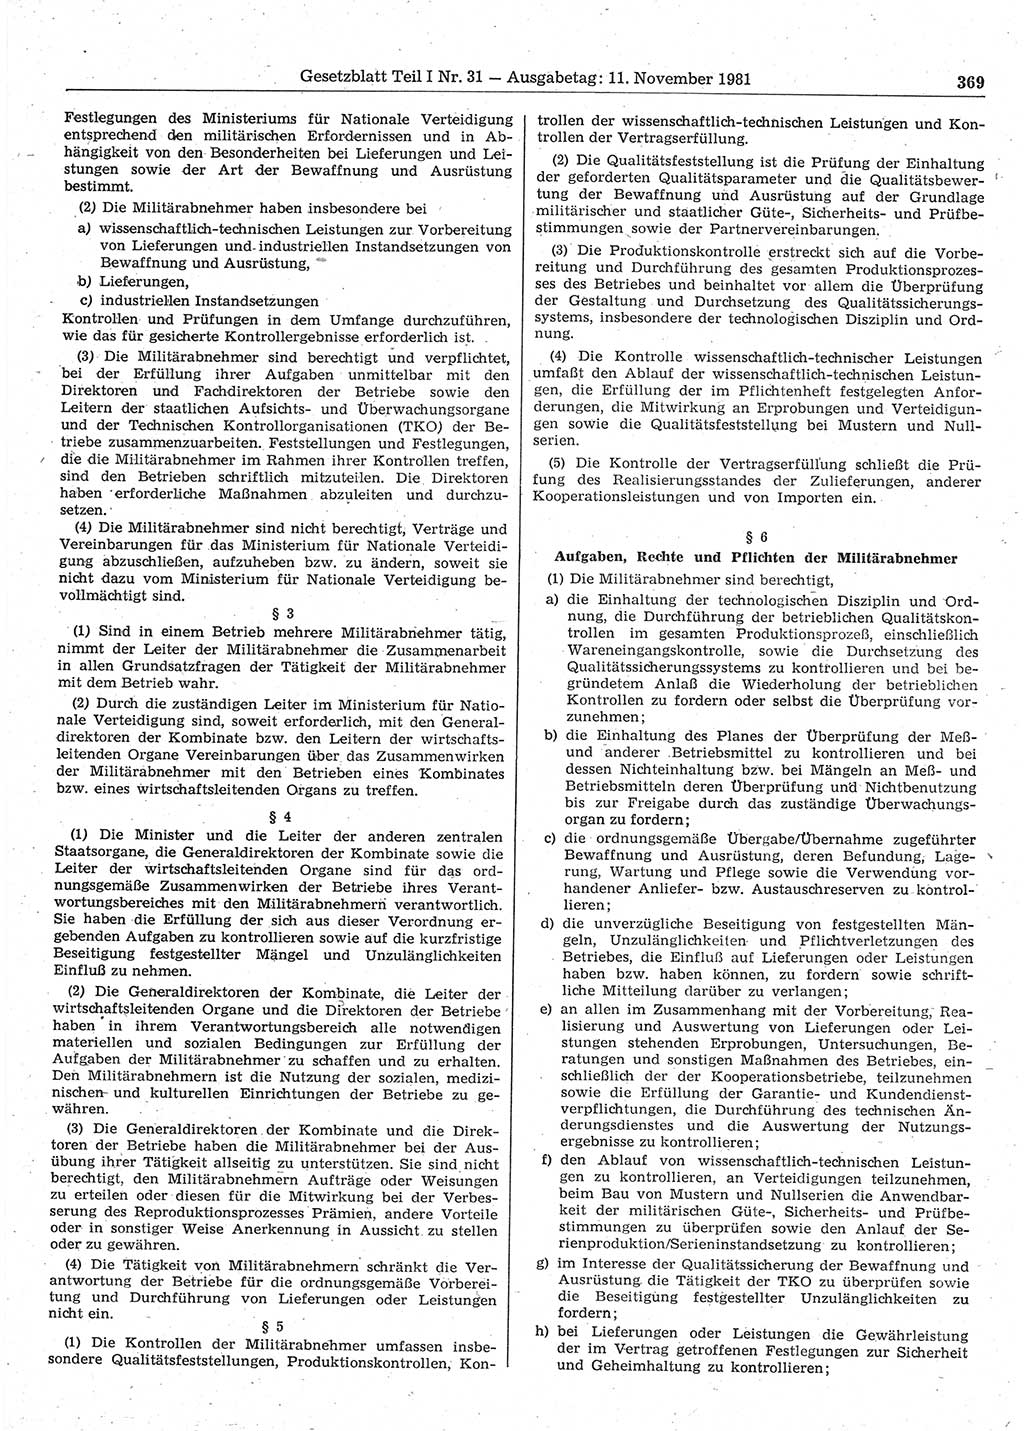 Gesetzblatt (GBl.) der Deutschen Demokratischen Republik (DDR) Teil Ⅰ 1981, Seite 369 (GBl. DDR Ⅰ 1981, S. 369)